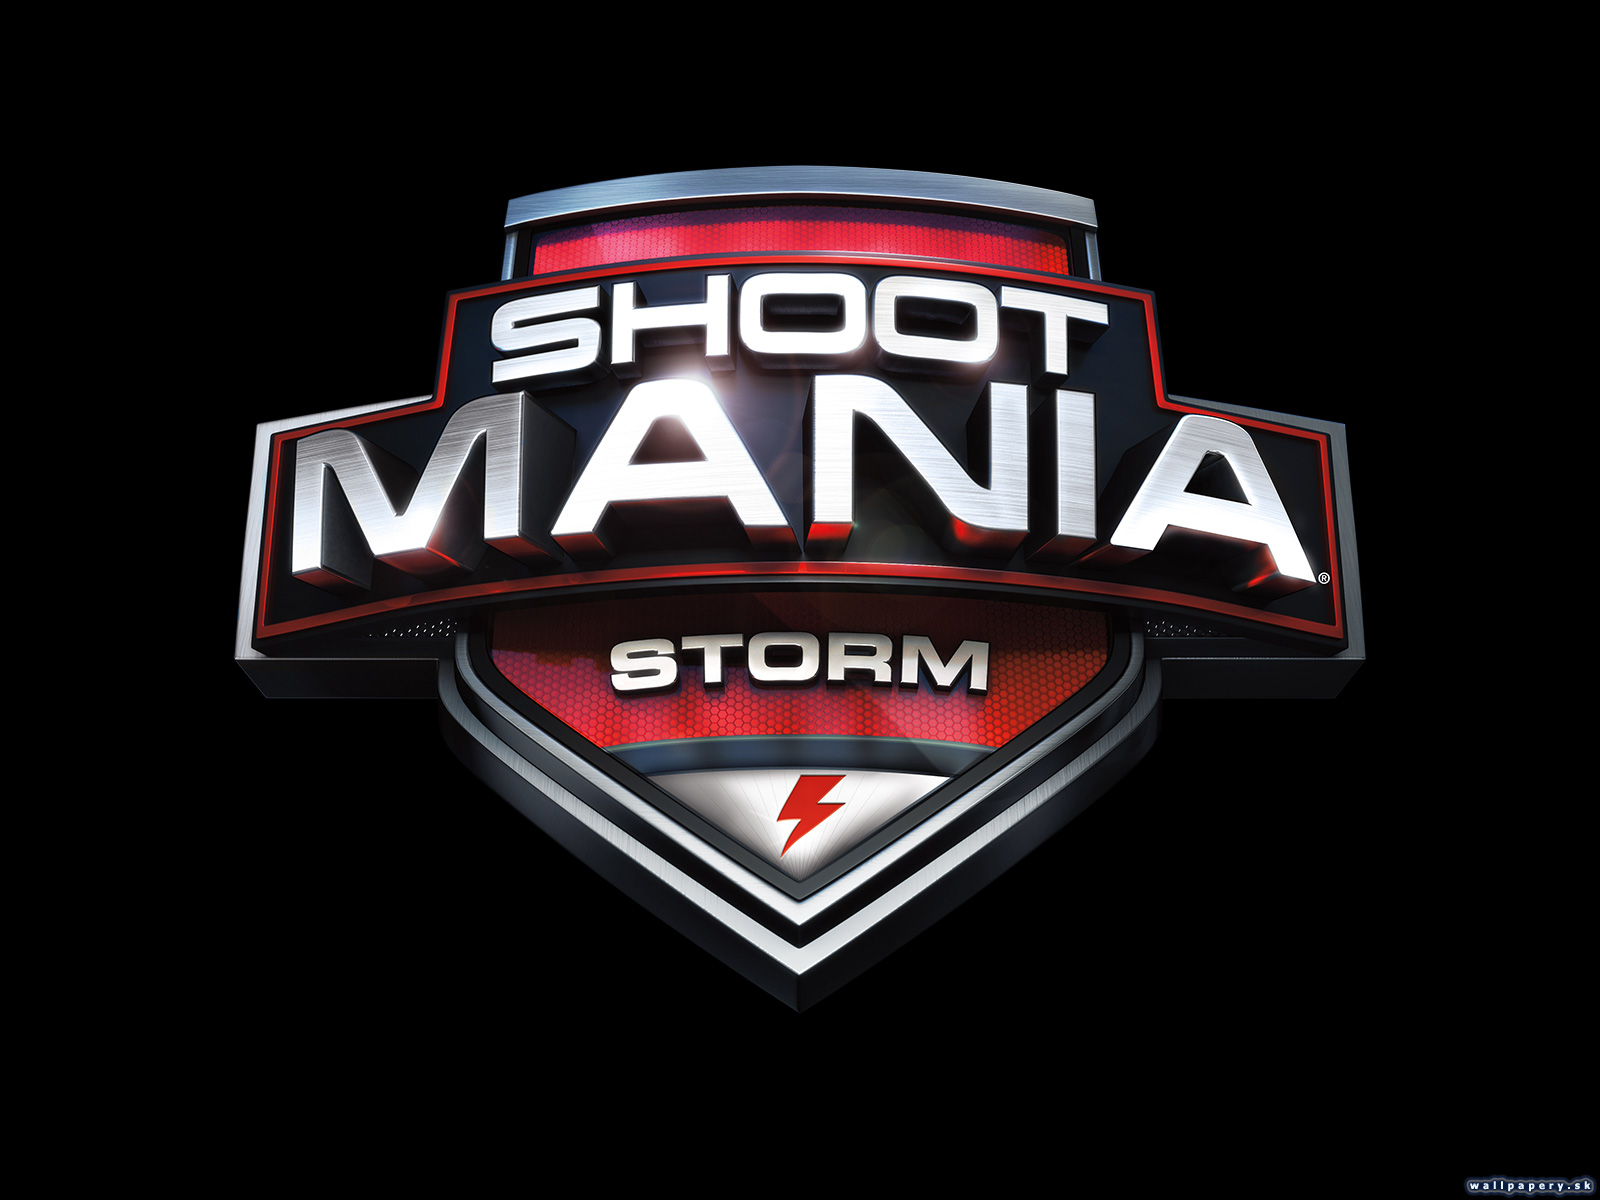 ShootMania Storm - wallpaper 3